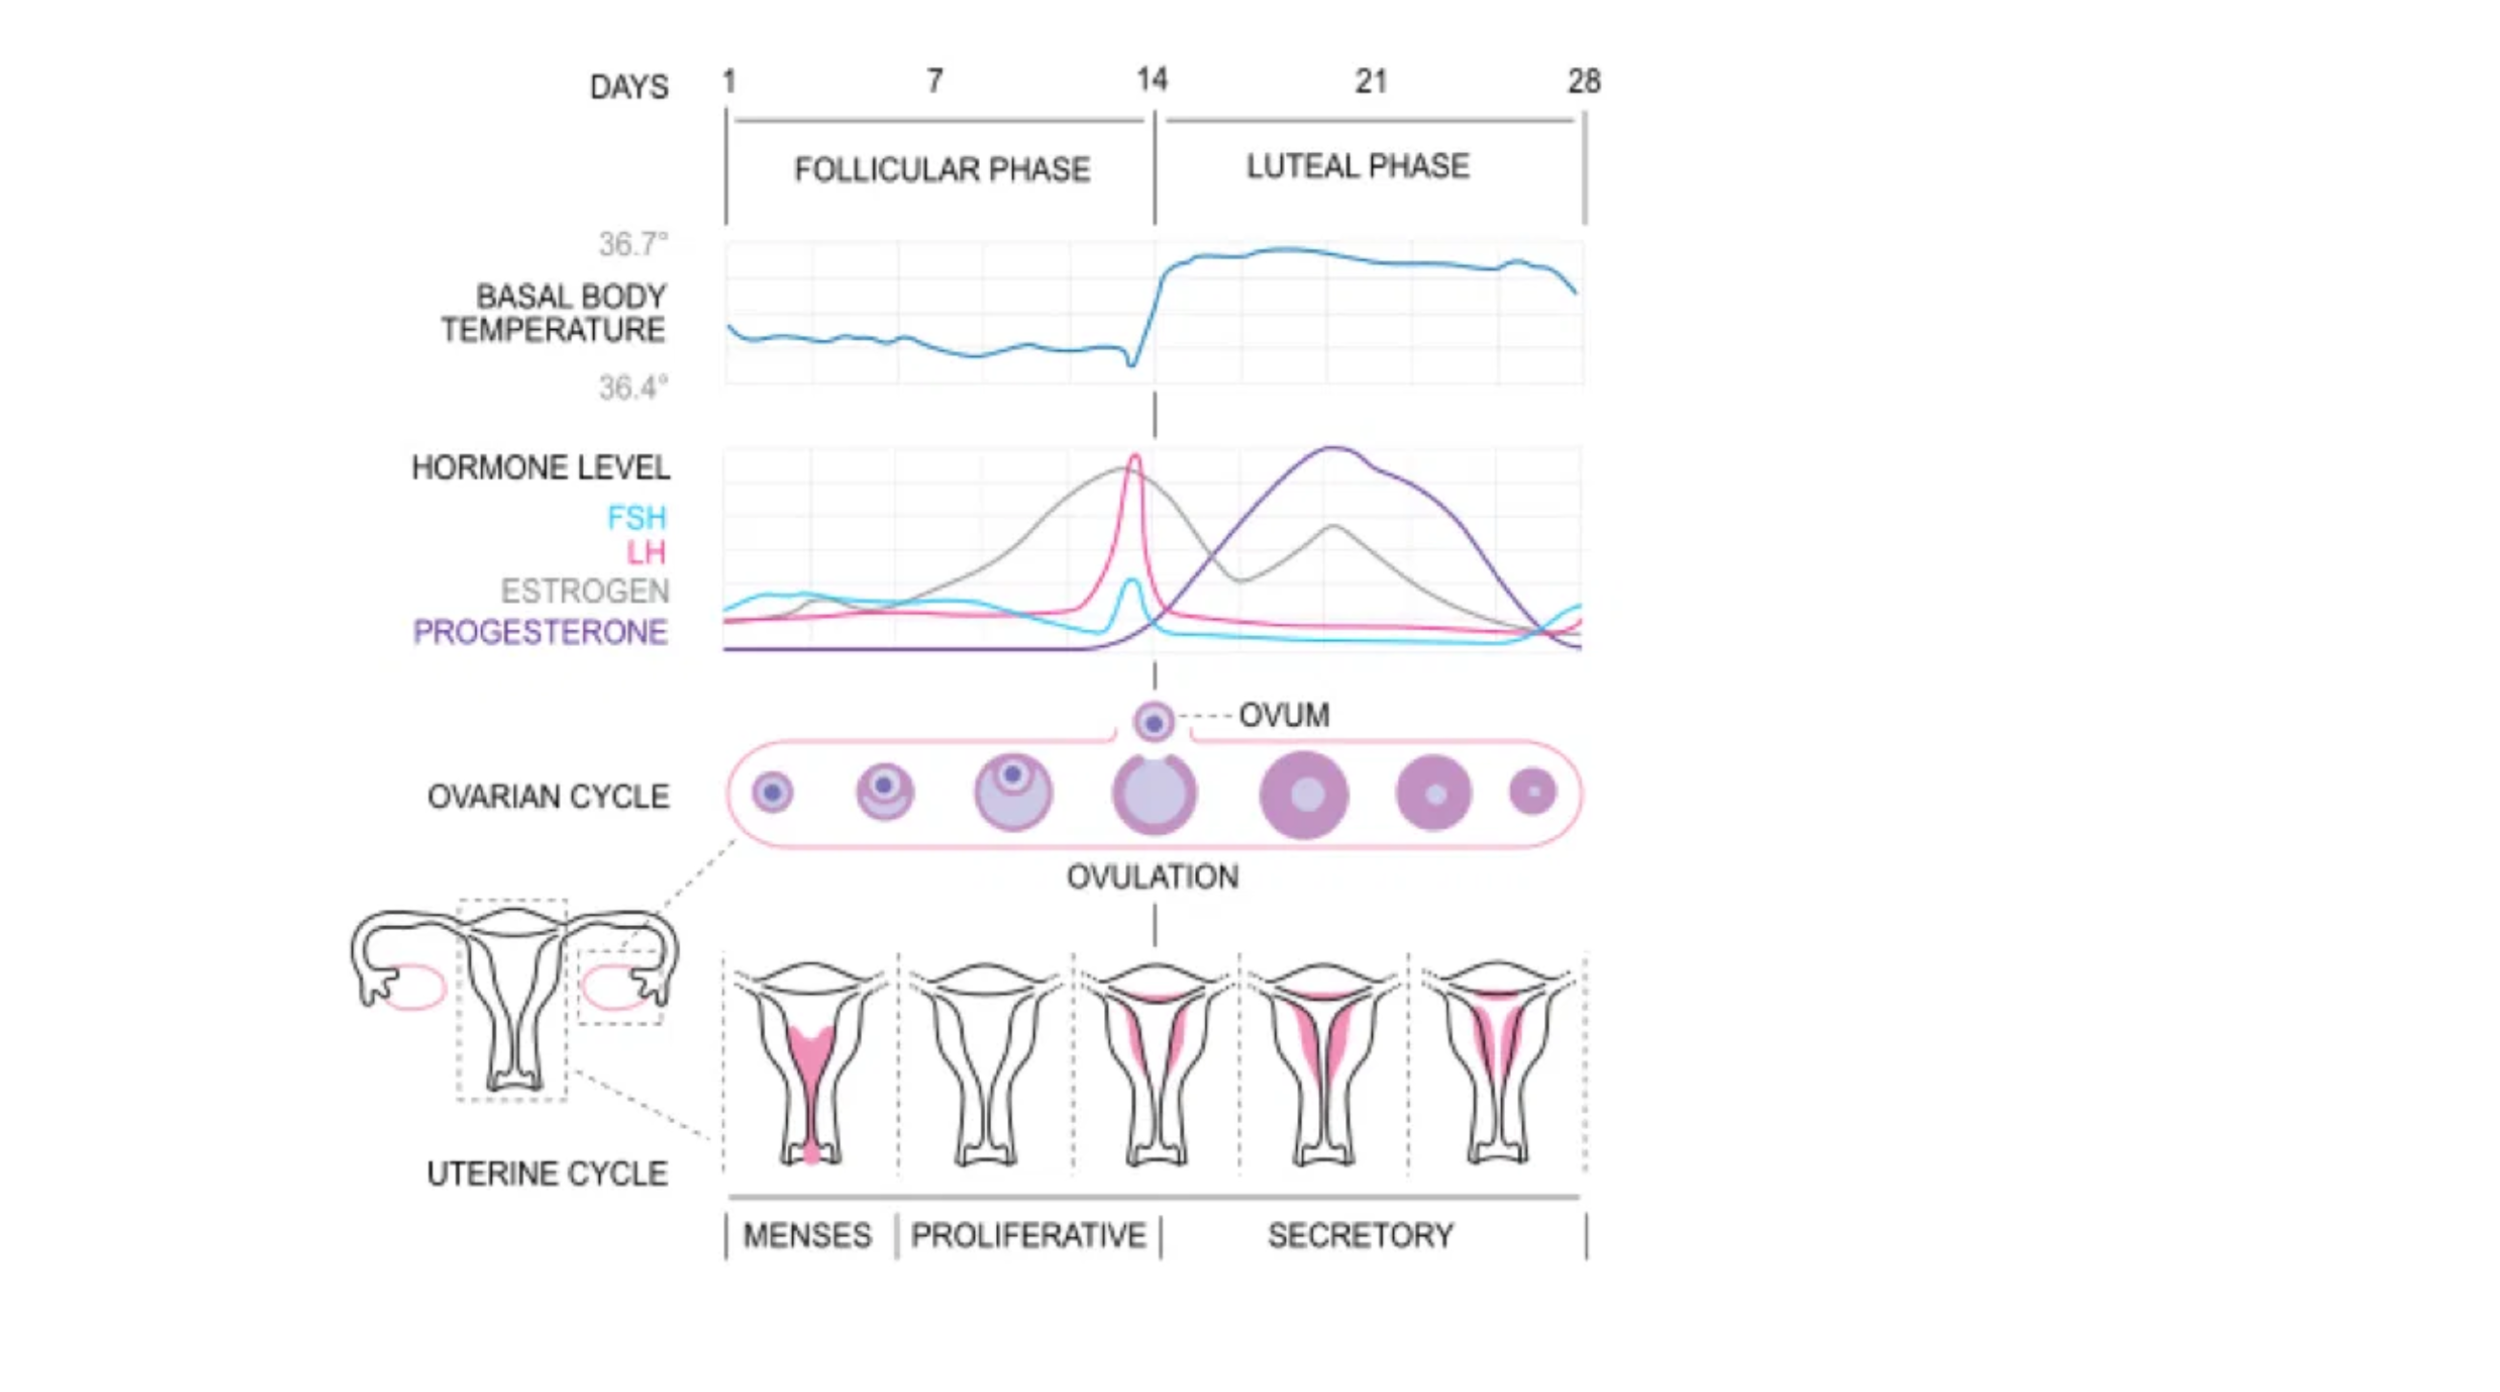 Ciclo menstrual mas largo en cetosis